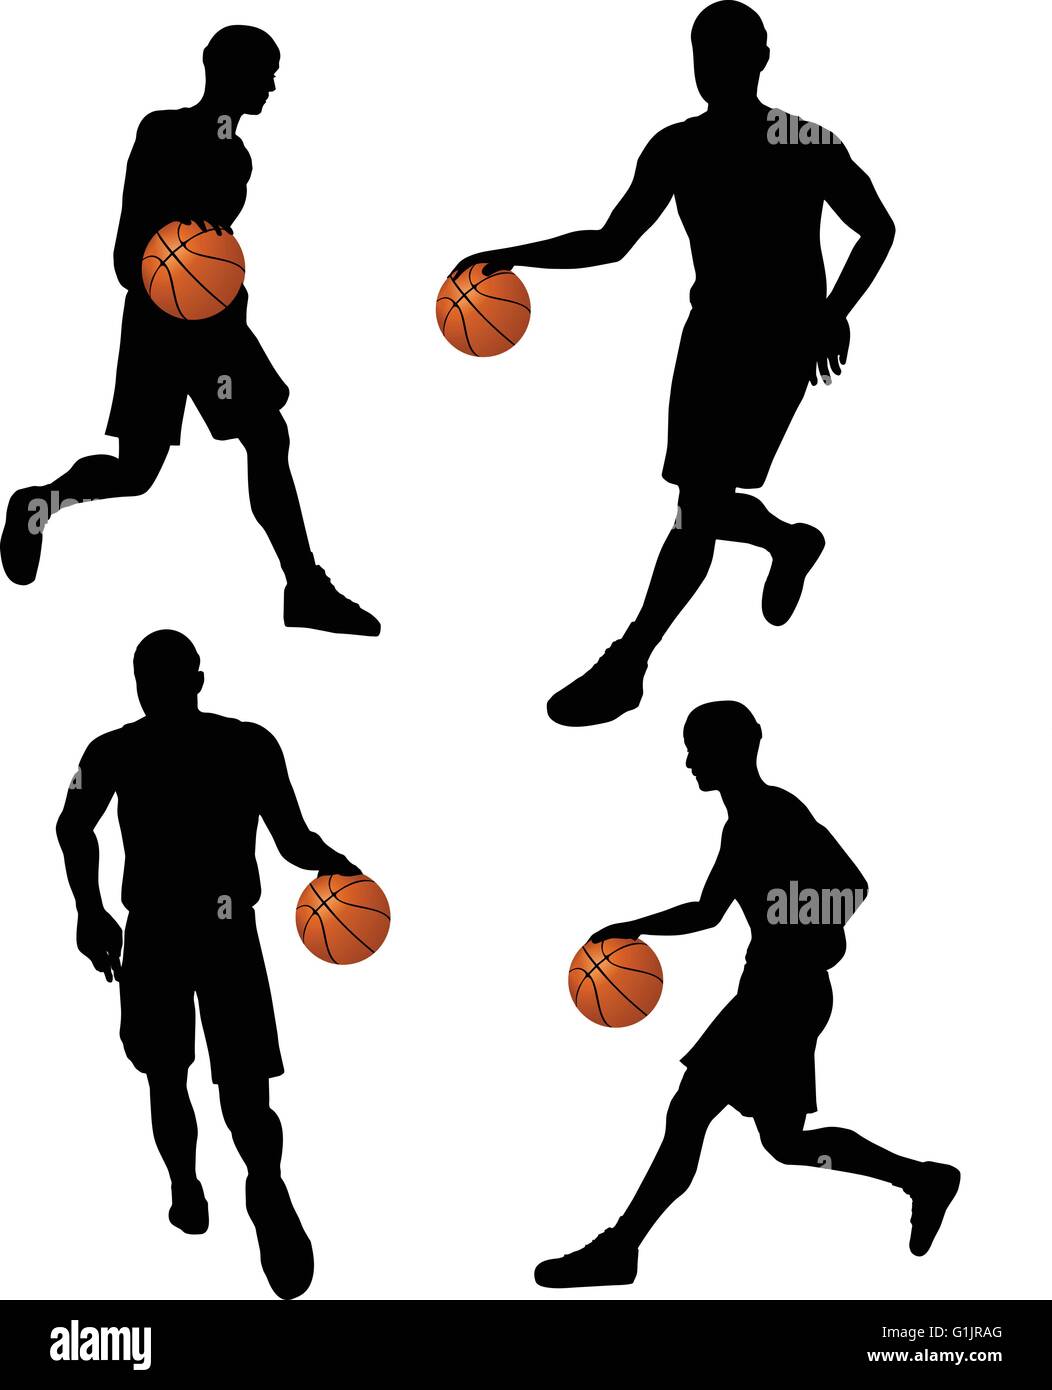 Vecteur EPS 10 silhouettes de joueurs de basket-ball en position dribble  Image Vectorielle Stock - Alamy